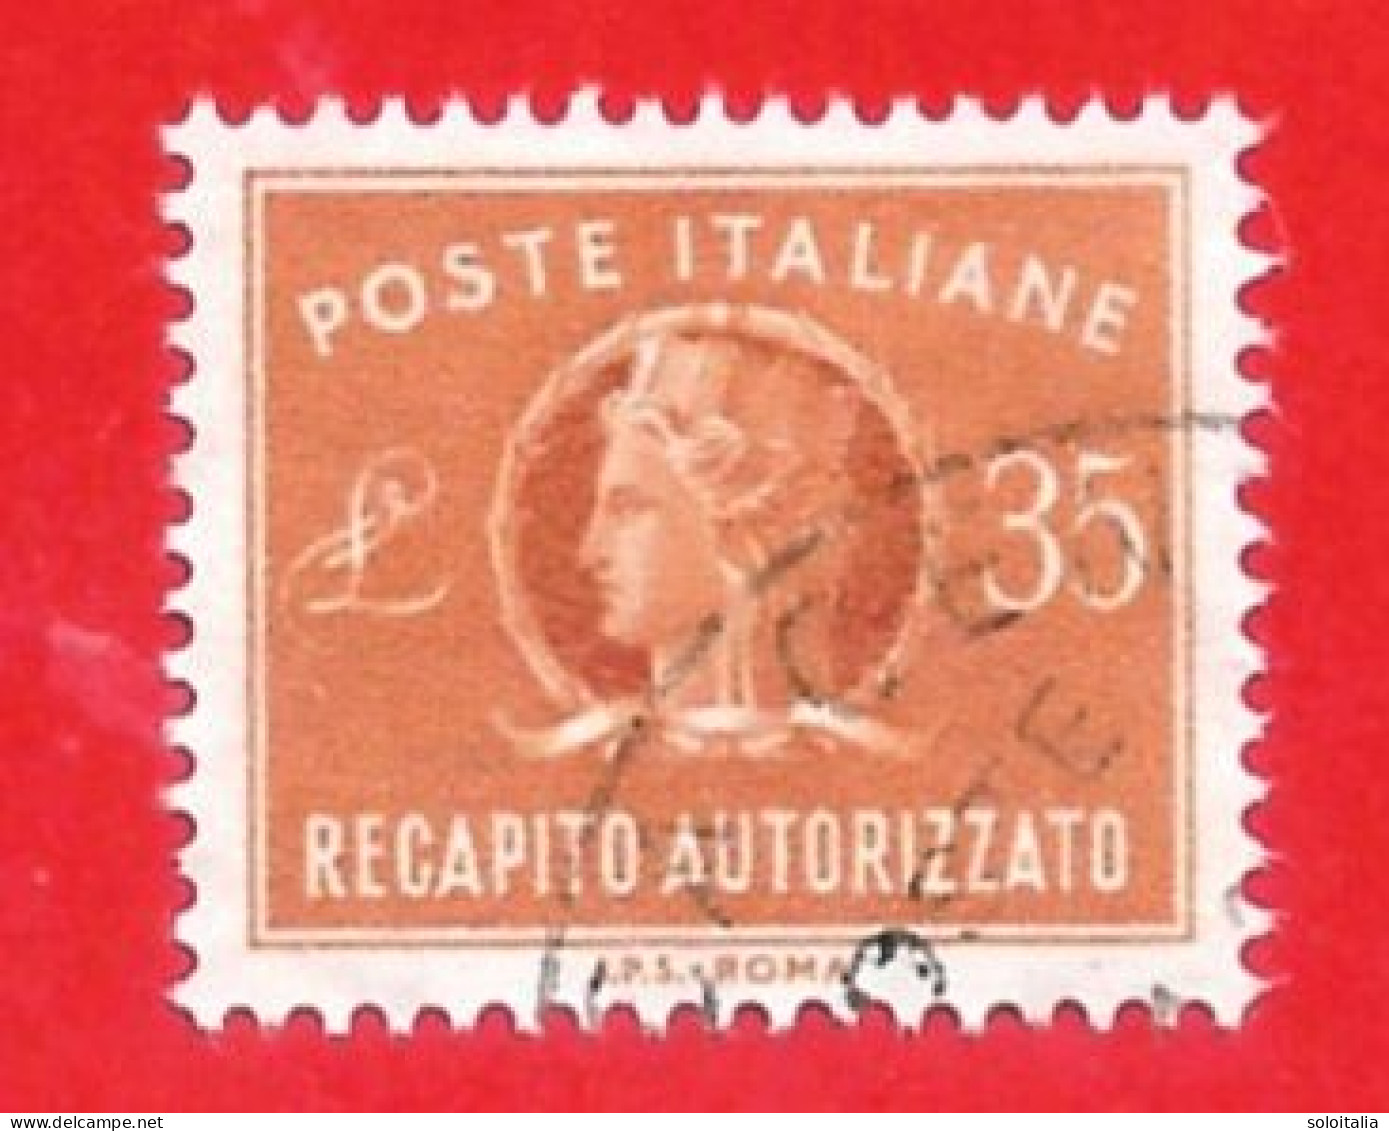 1955-90 (14) Recapito Autorizzato Filigrana Stelle IV Lire 35 - Usato (leggi Messaggio Del Venditore) - Express/pneumatic Mail